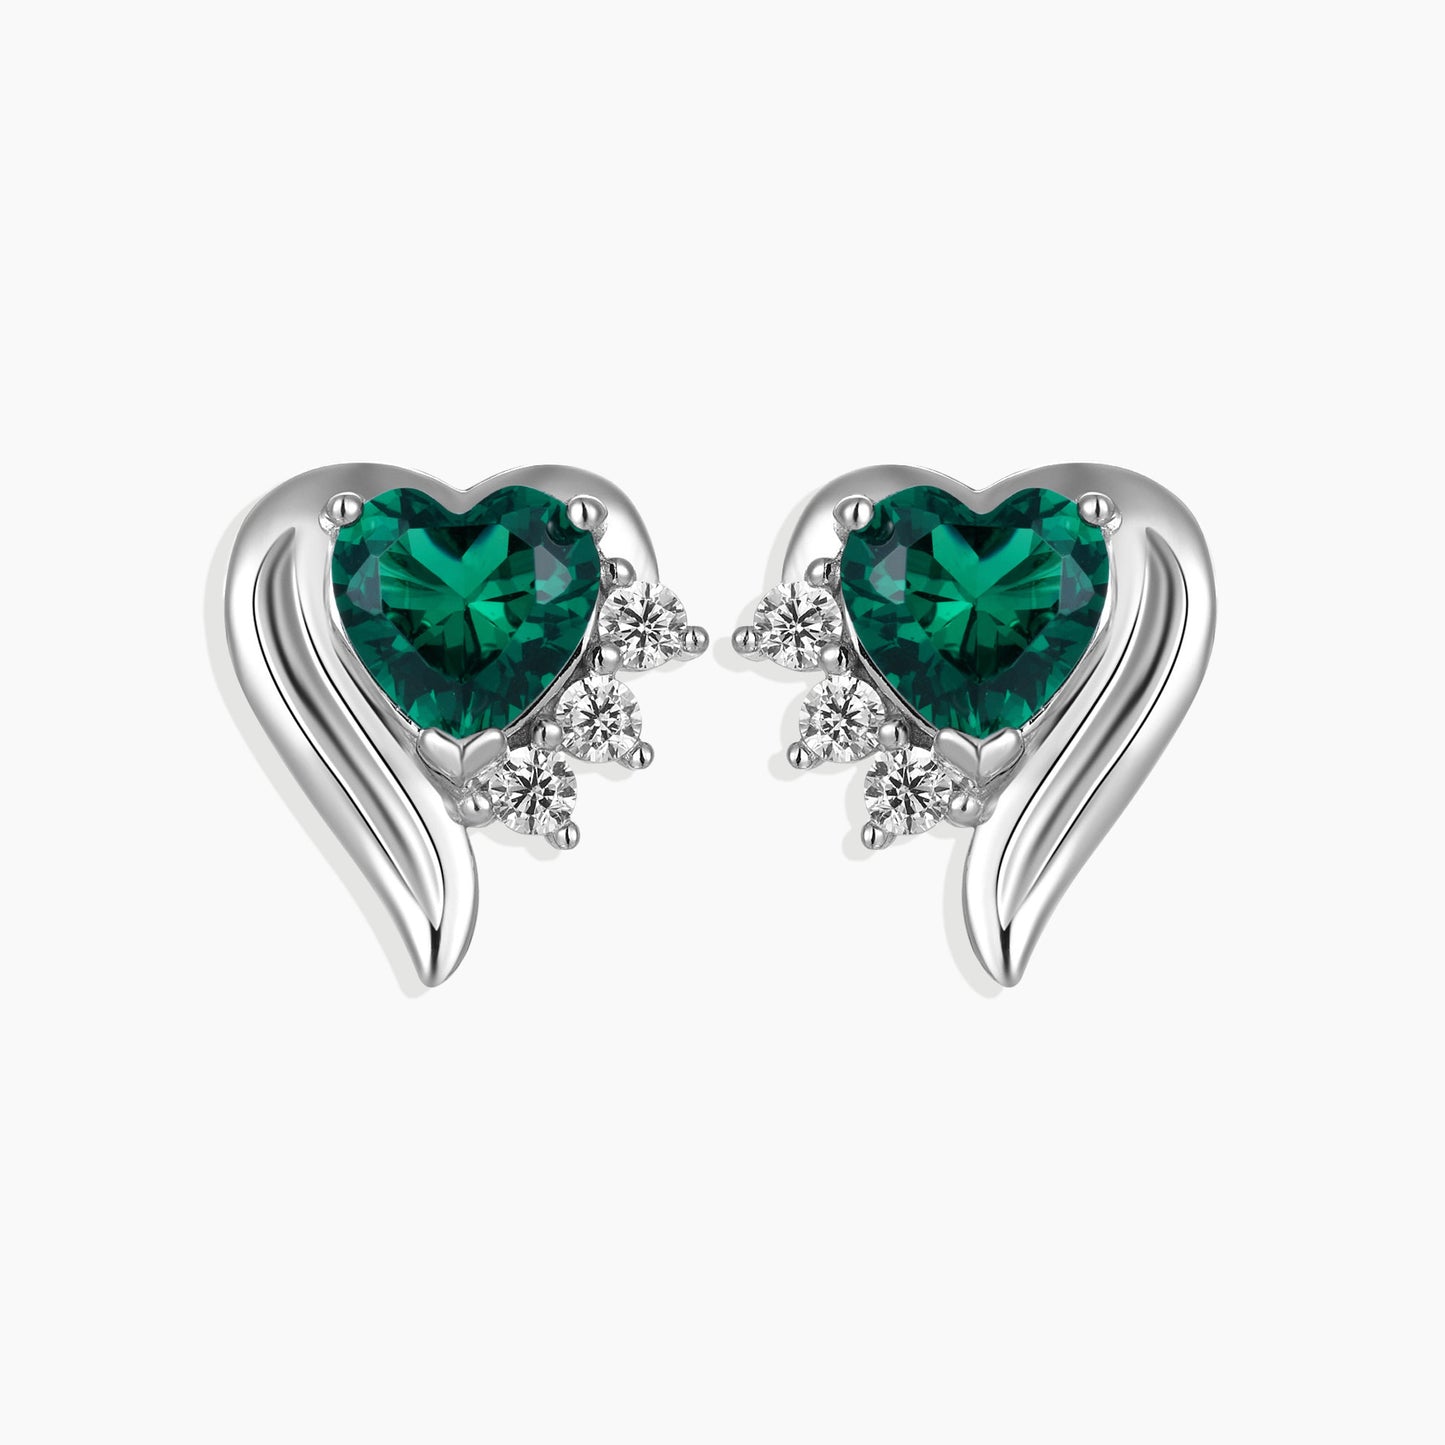 Emerald Heart Shape Stud Earrings in Sterling Silver